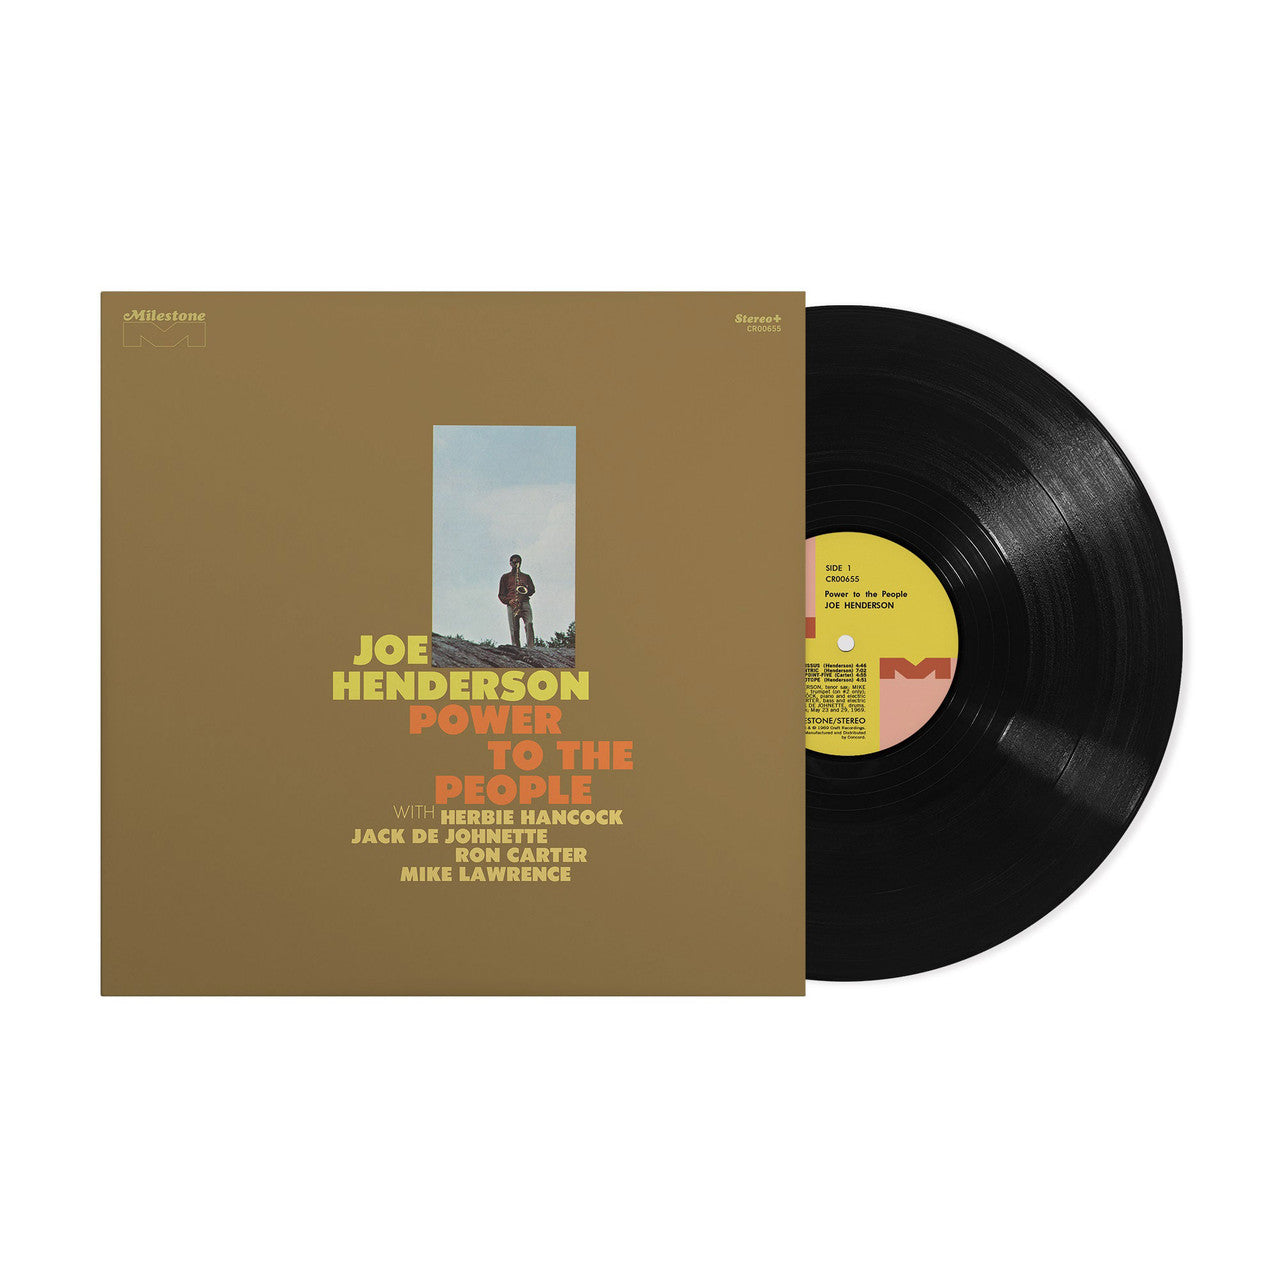 Joe Henderson - Power to the People - Jazz Dispensary LP